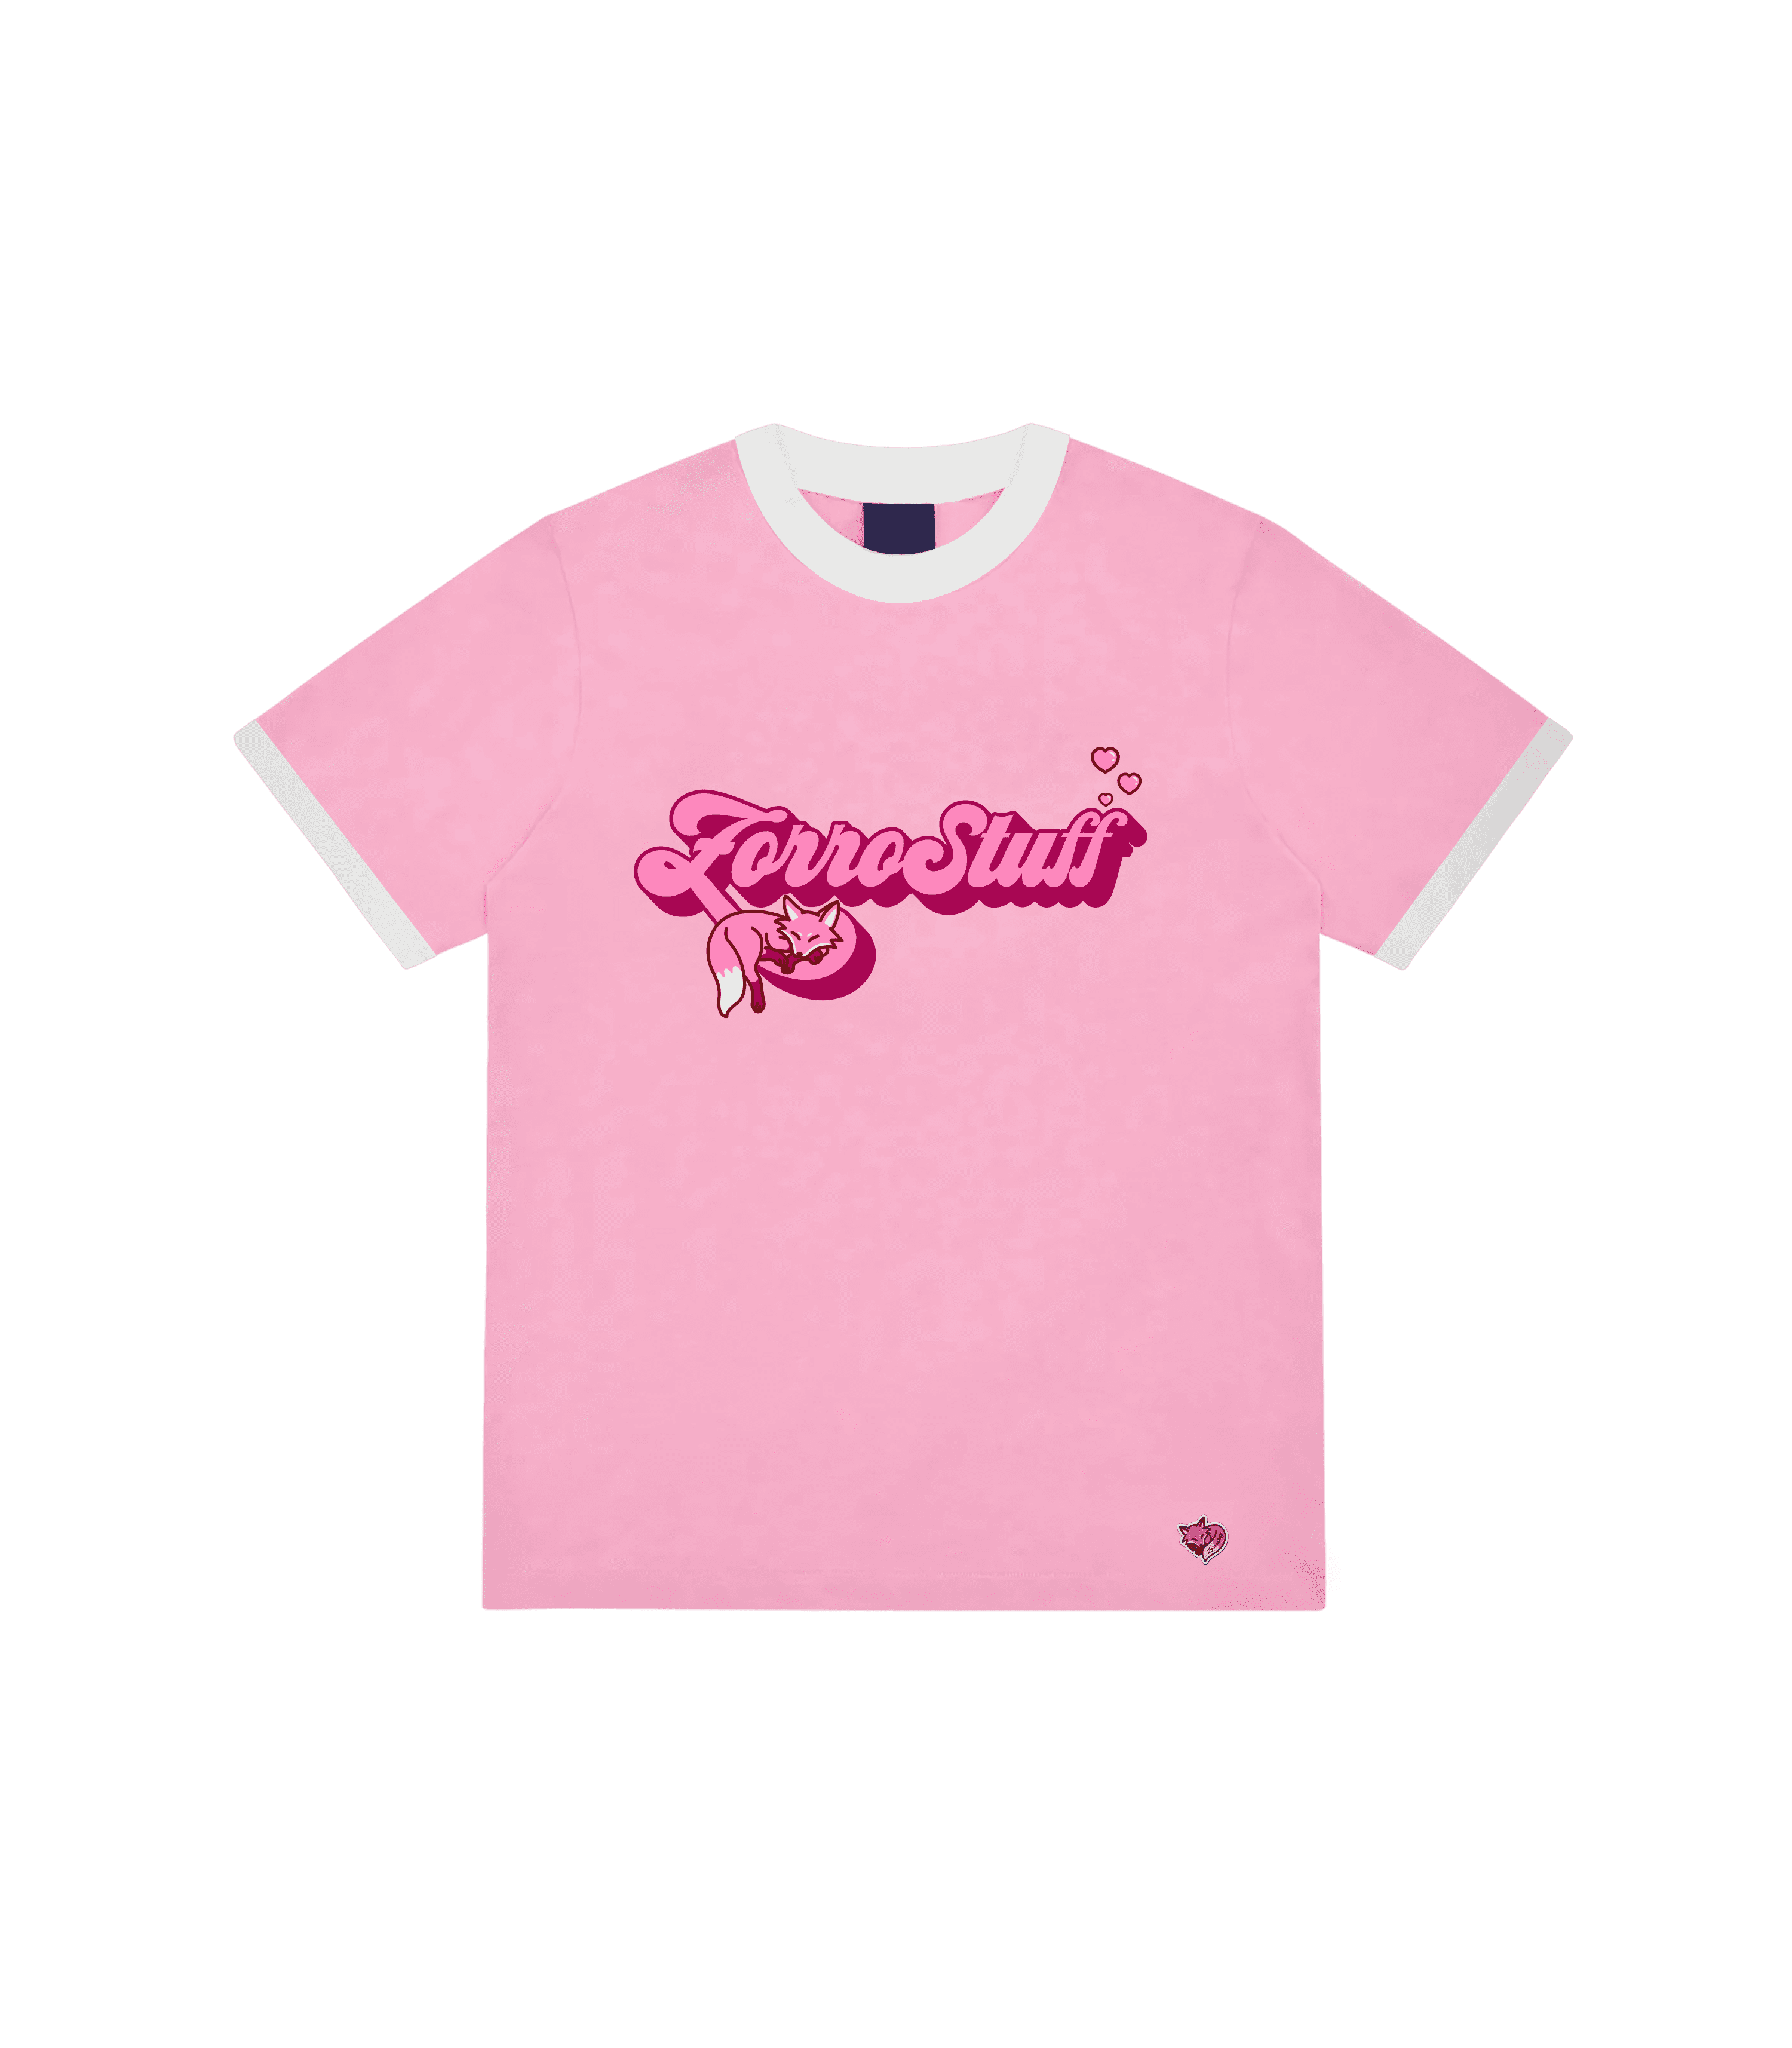 Zorro Stuff T-Shirts S / Pink 90s FIT Pink Tee